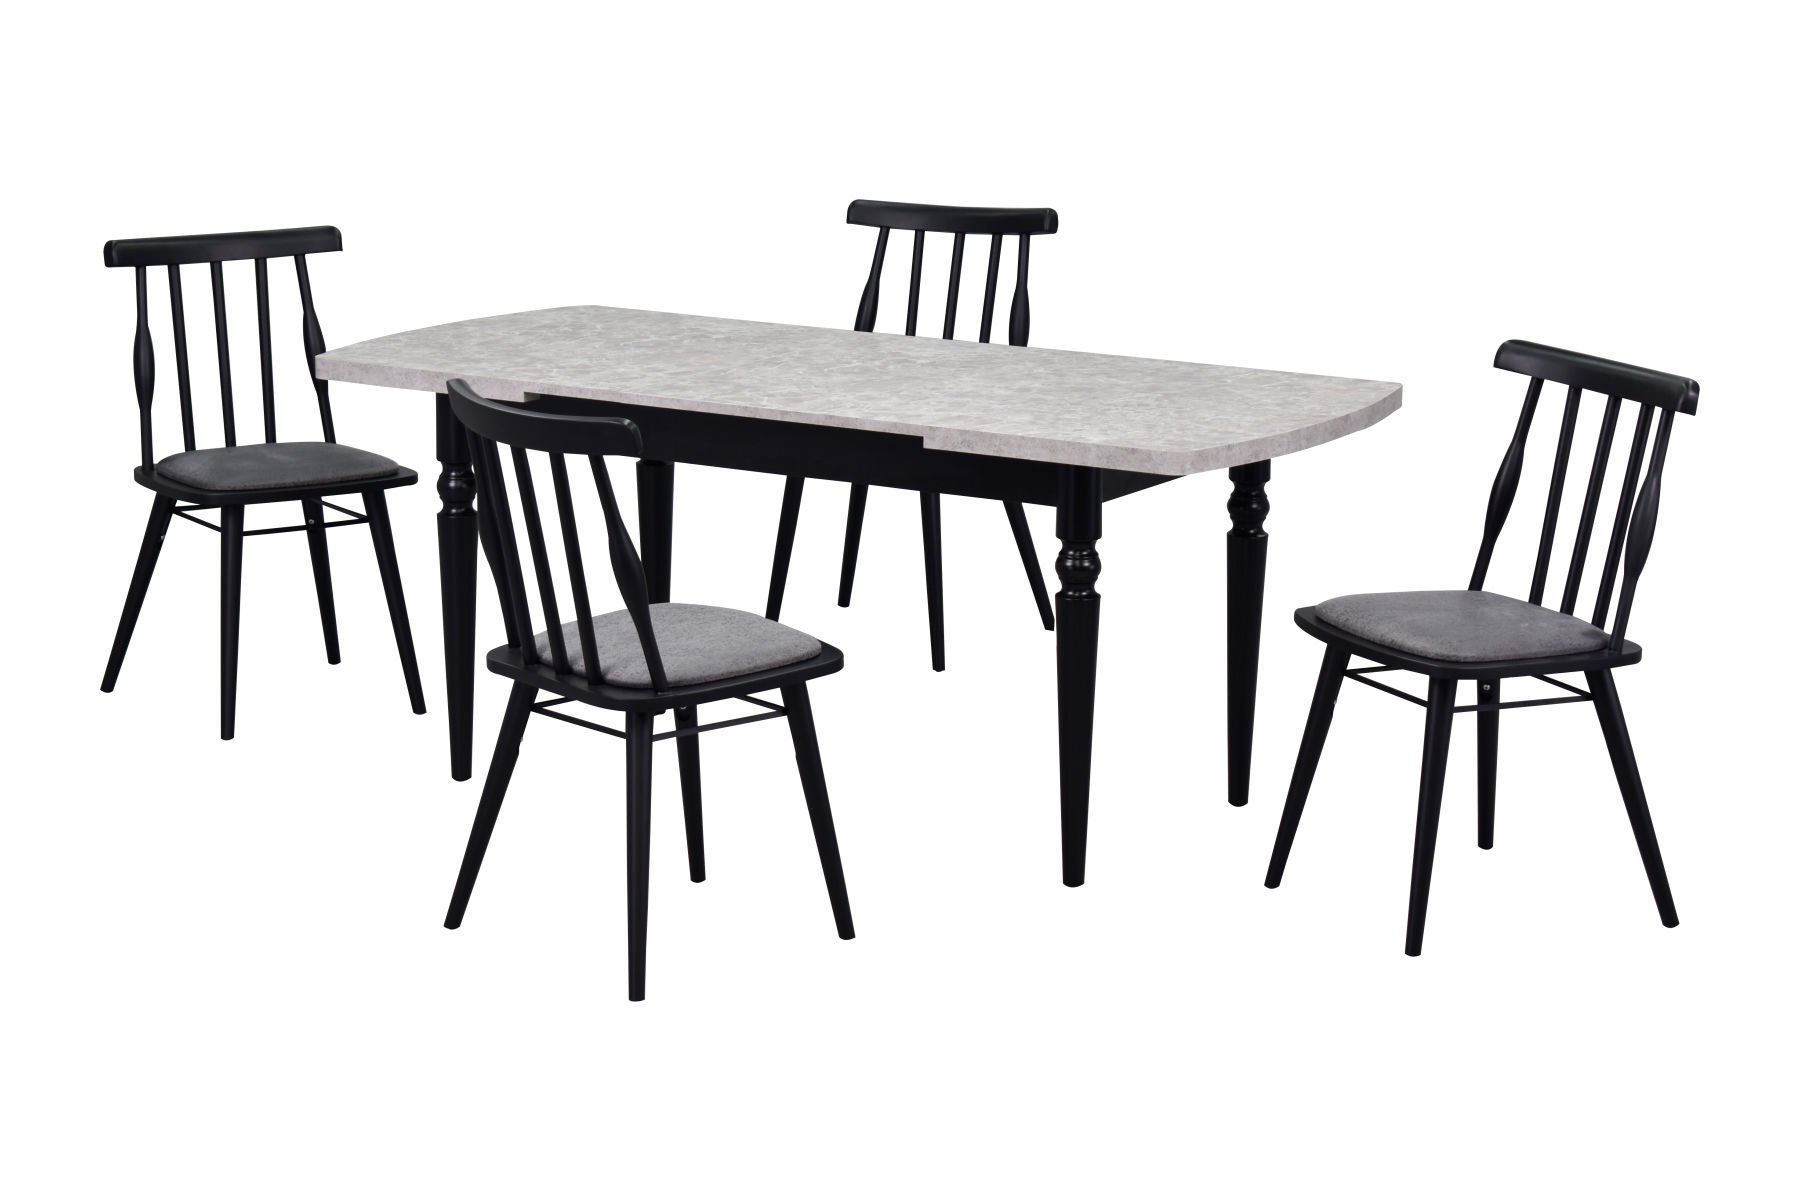 Soma Sandalye Turna Mutfak Masası Takımı - 80x140 cm